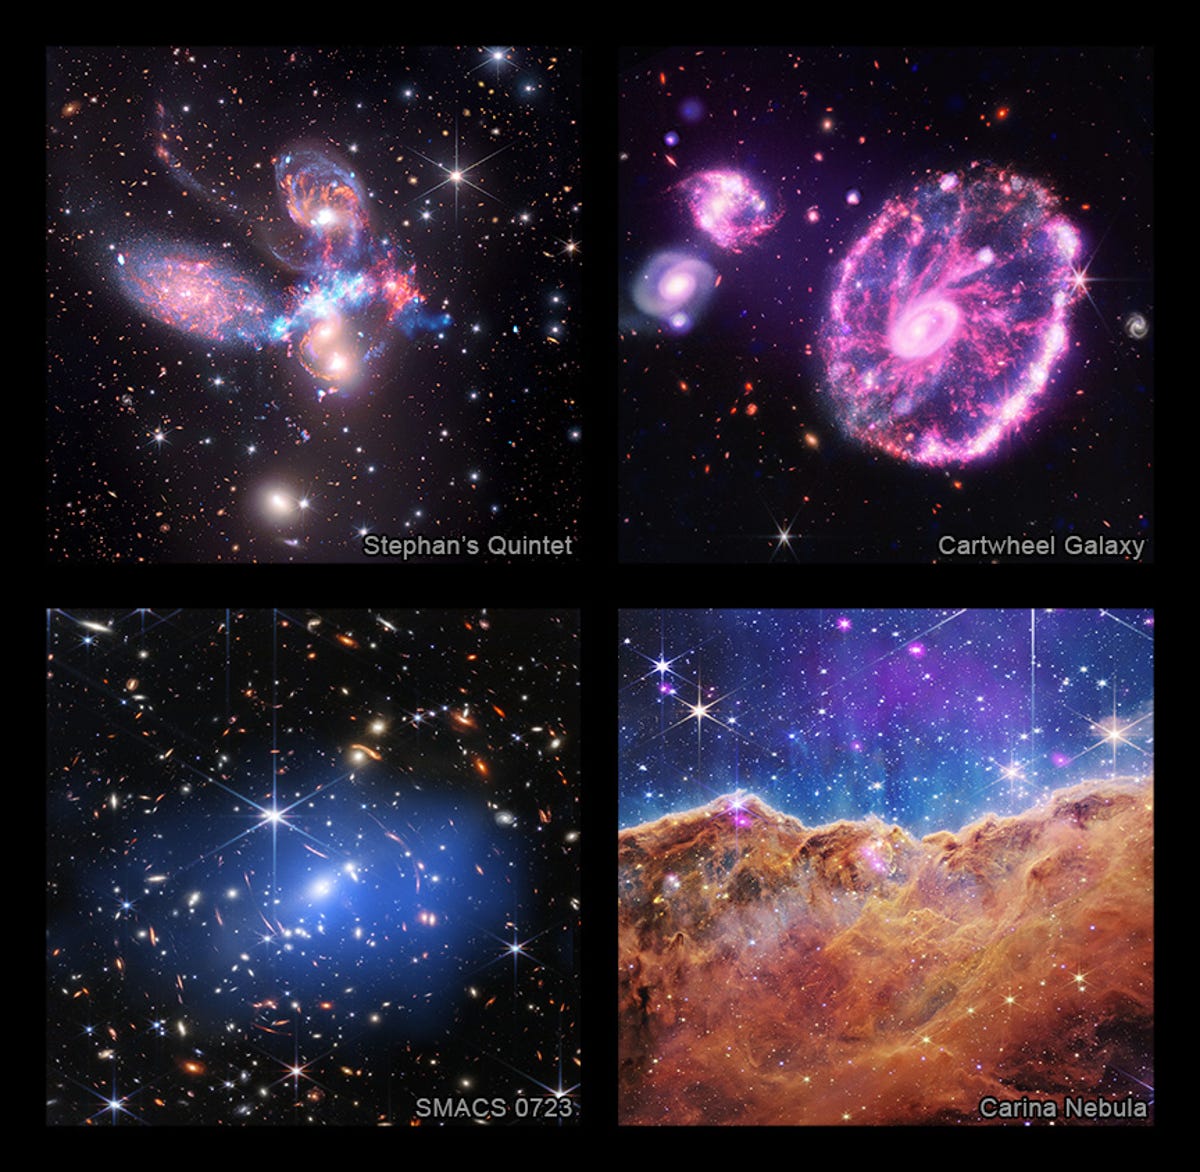 La parte superior izquierda es la imagen compuesta del Quinteto de Stephan, la parte superior derecha muestra la galaxia Cartwheel, la parte inferior izquierda muestra el Primer Campo Profundo de Webb y la parte inferior derecha muestra la Nebulosa Carina.